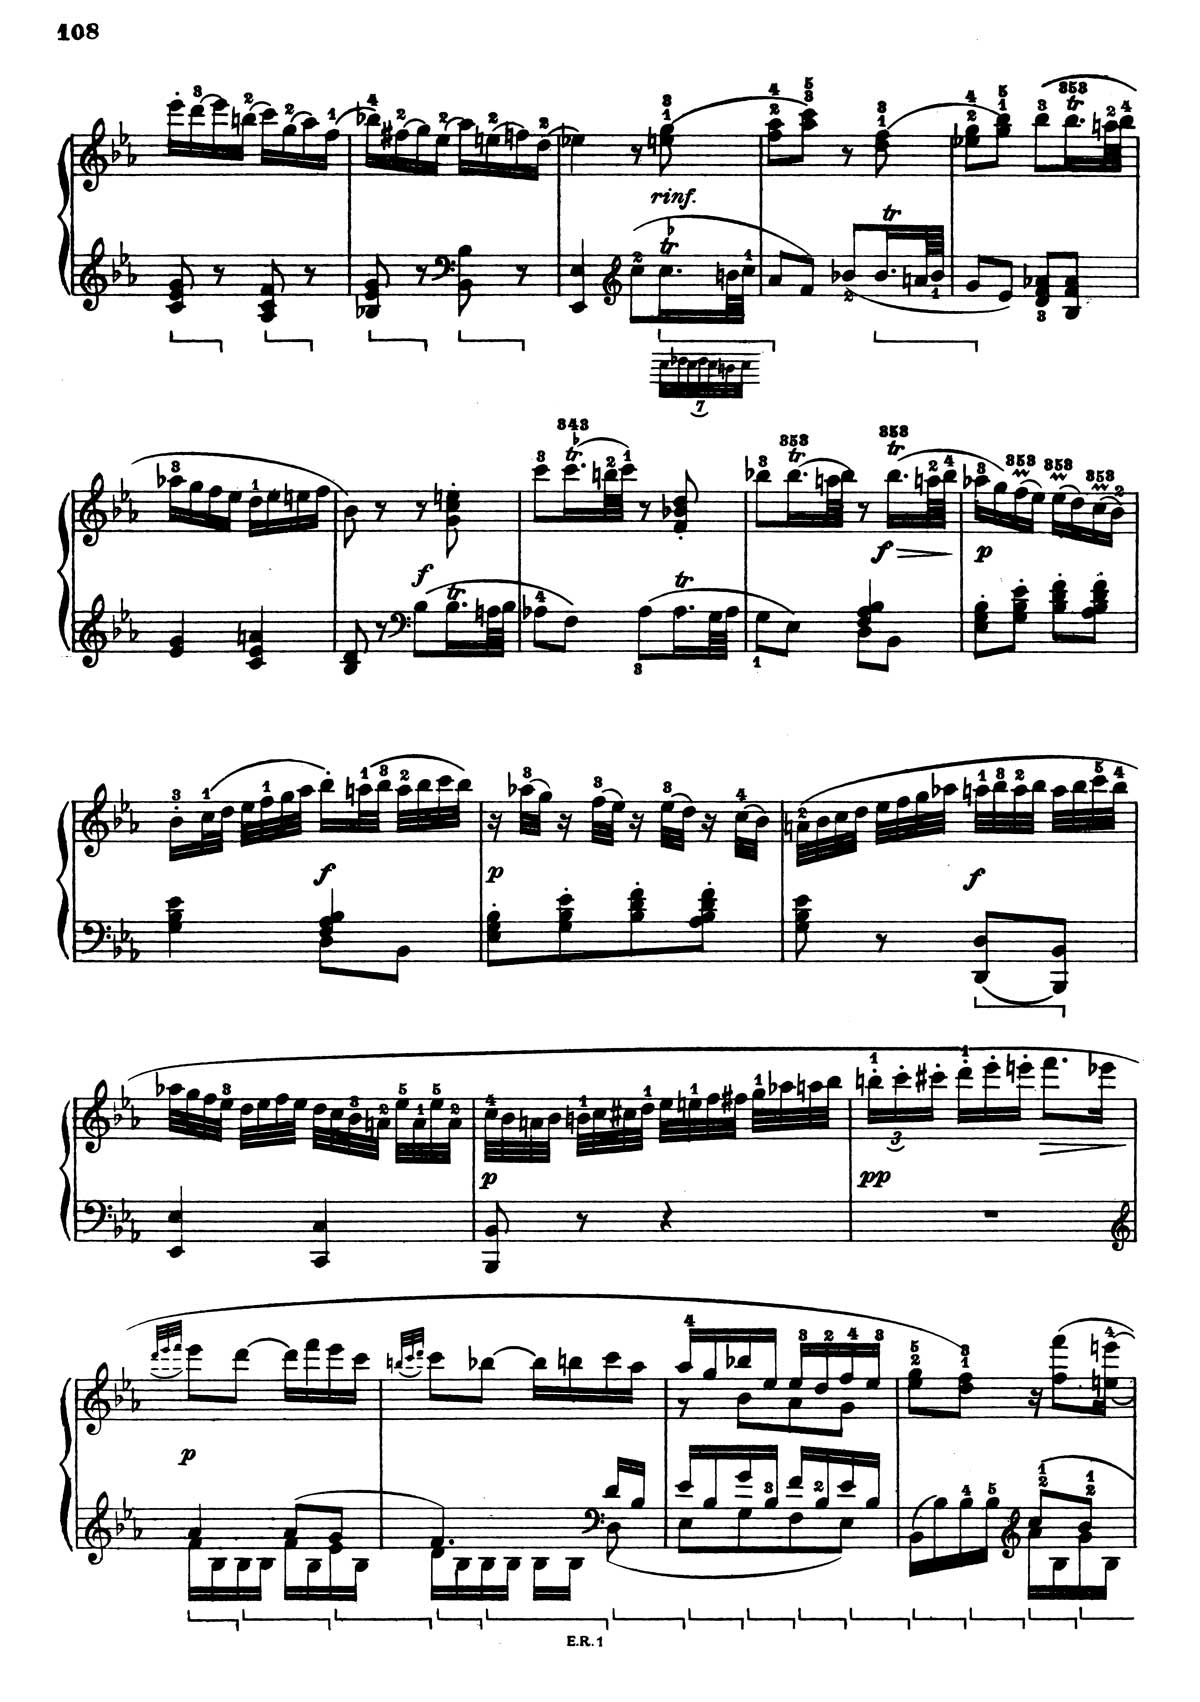 Beethoven Sonata 4-30 sheet music